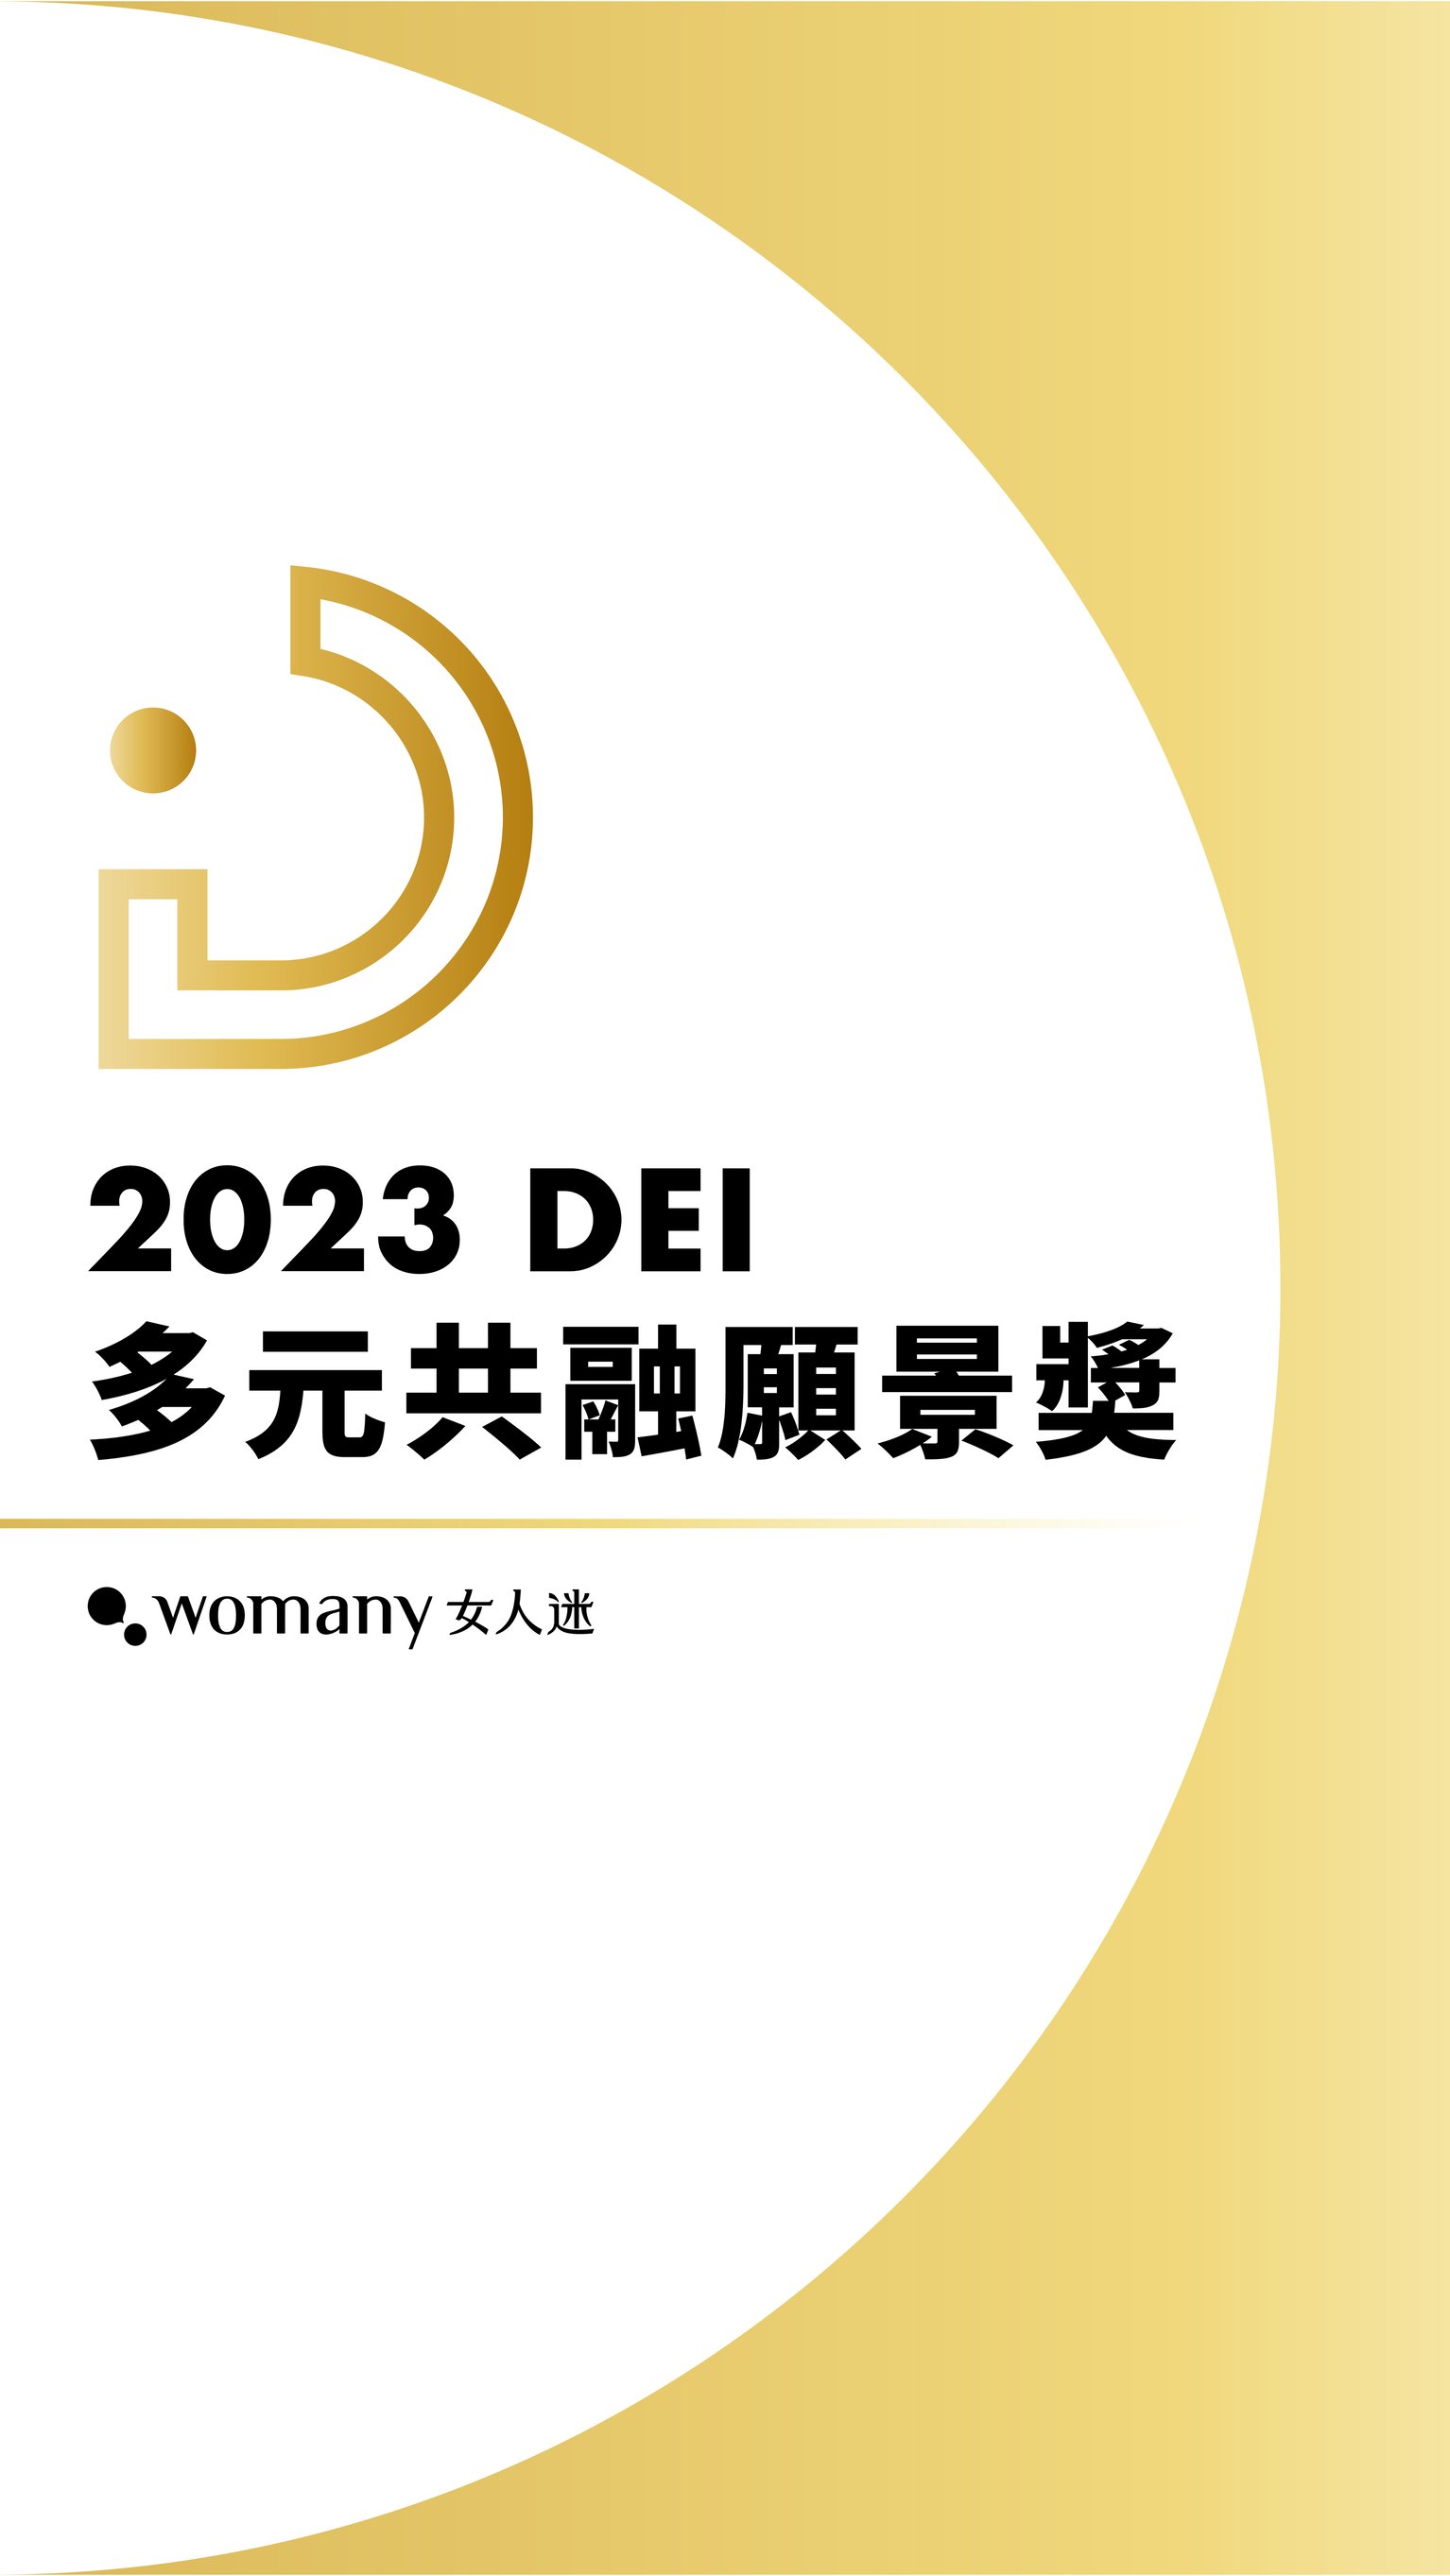 2023 女人迷 DEI 多元共融願景獎